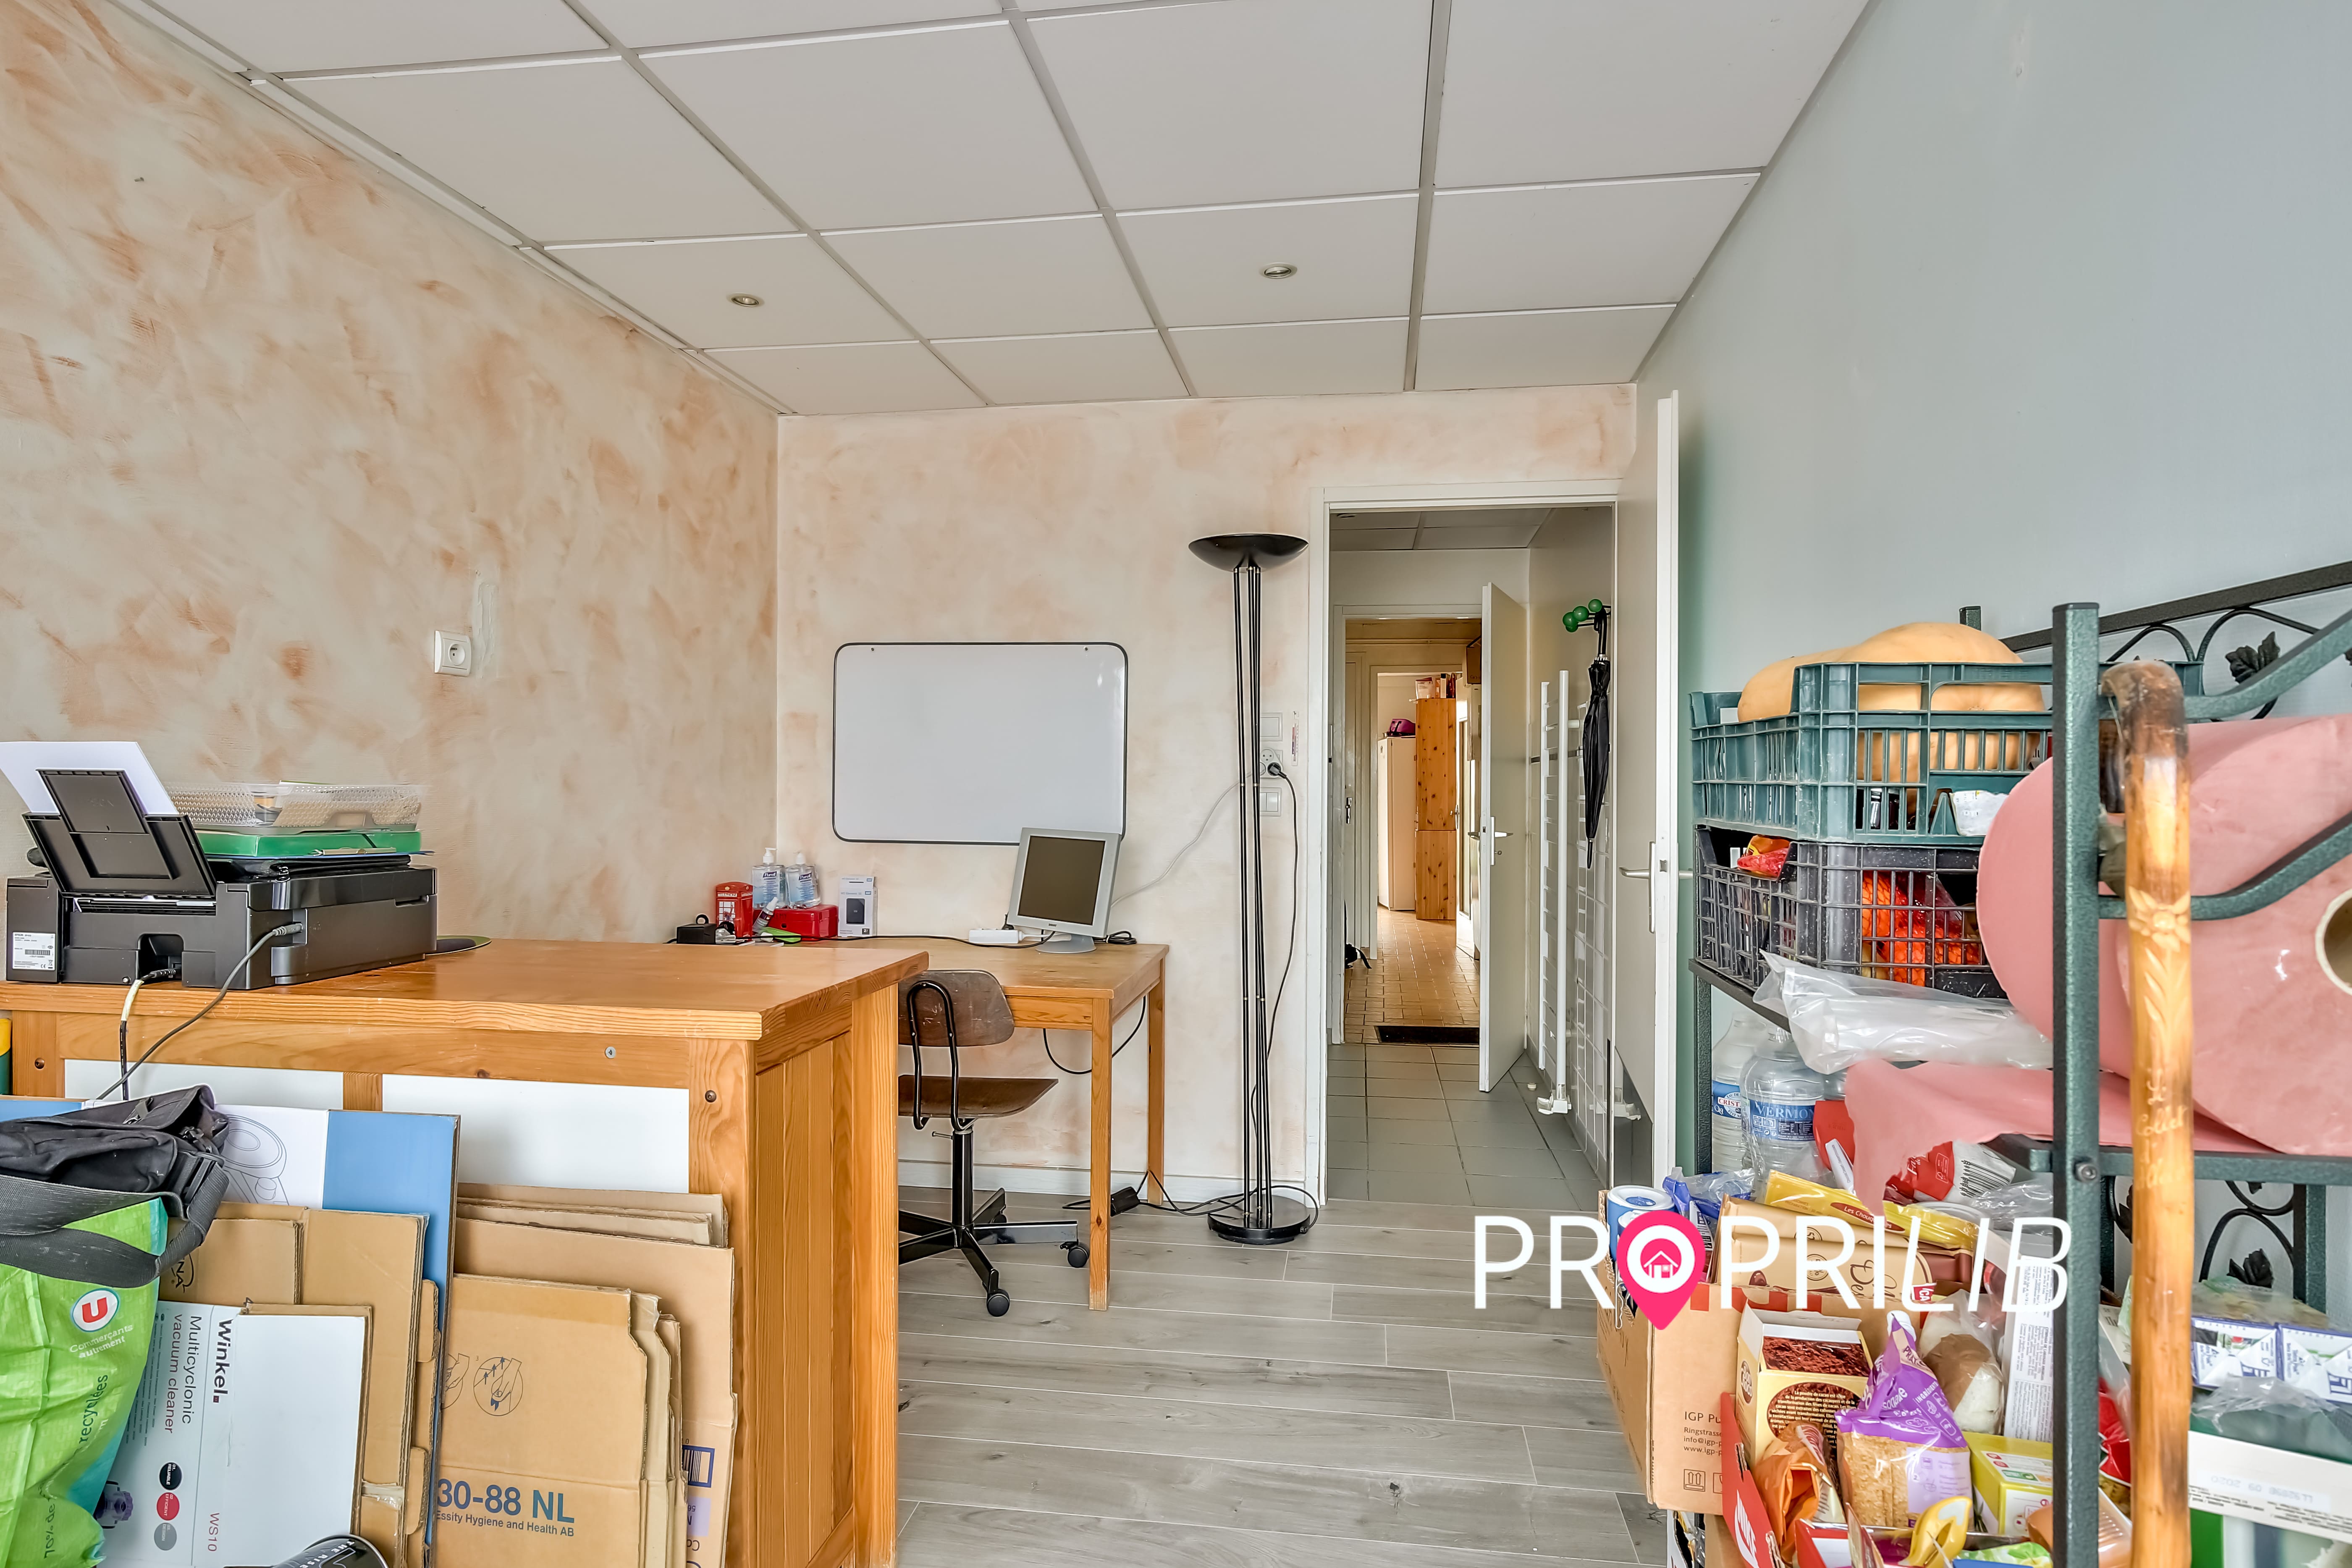 PropriLib l’agence immobilière sans commission vend cet appartement dans Saint-Quentin-Fallavier